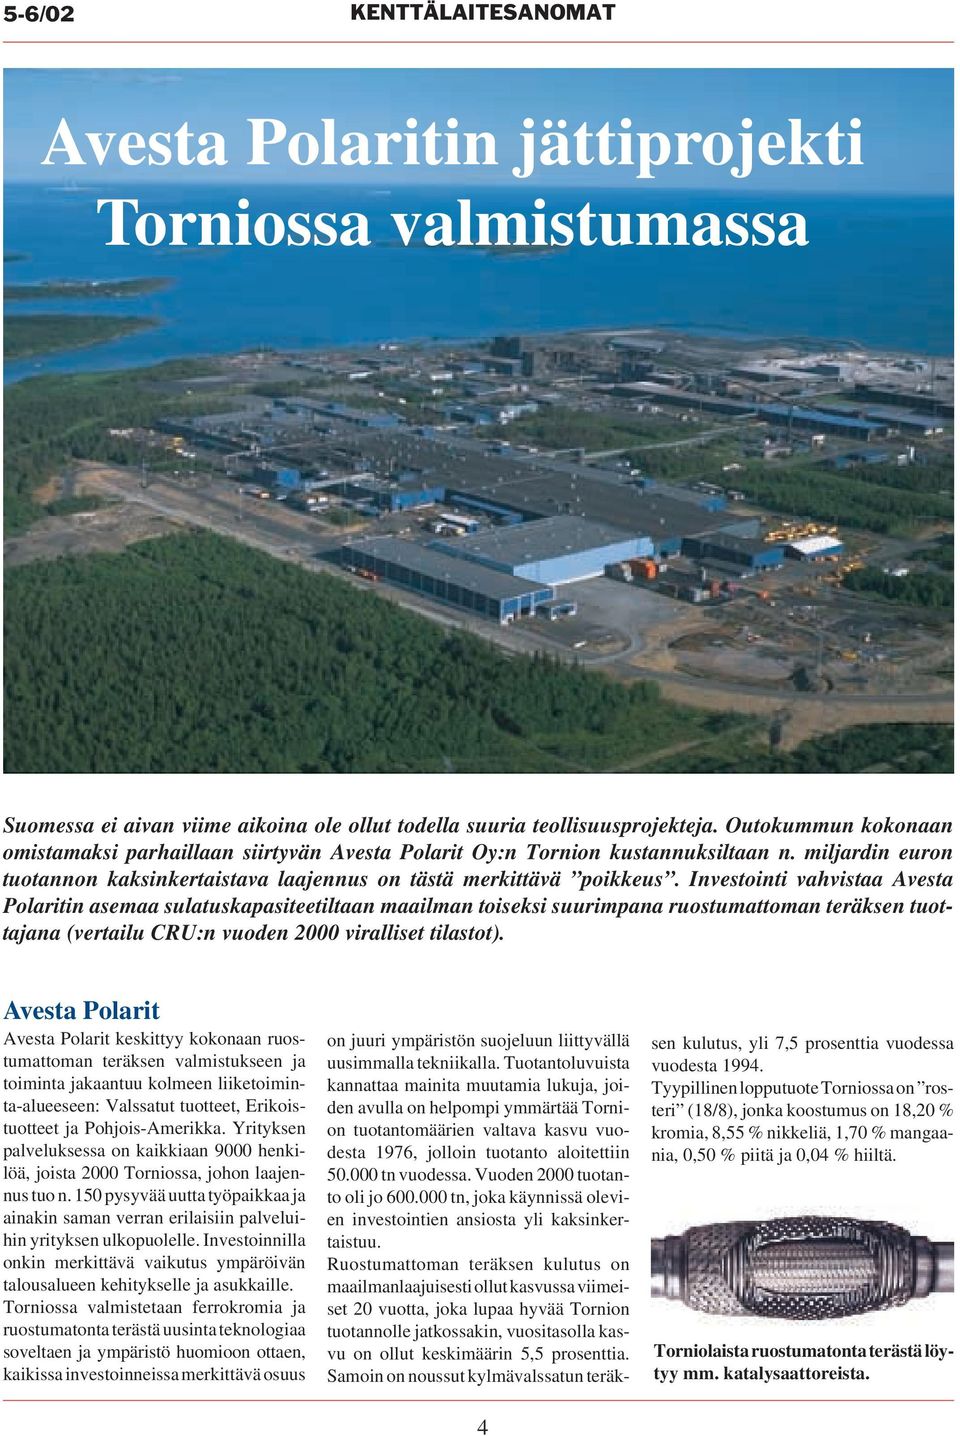 Investointi vahvistaa Avesta Polaritin asemaa sulatuskapasiteetiltaan maailman toiseksi suurimpana ruostumattoman teräksen tuottajana (vertailu CRU:n vuoden 2000 viralliset tilastot).